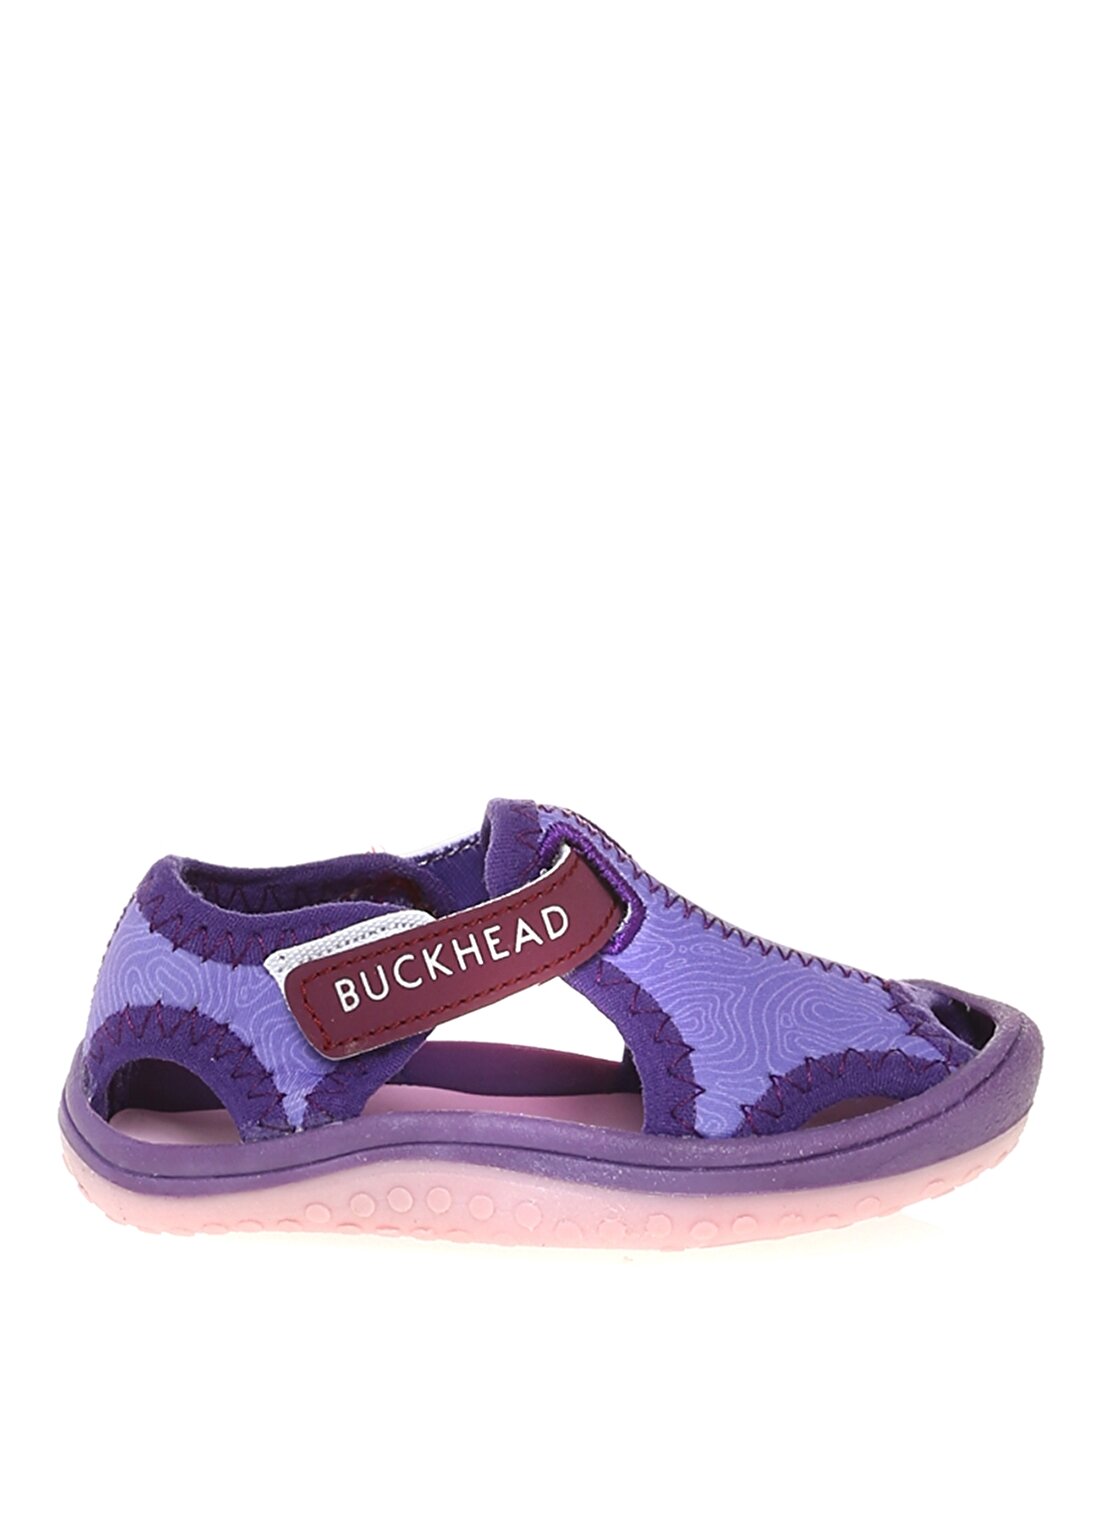 Buckhead Mor Kız Çocuk Sandalet